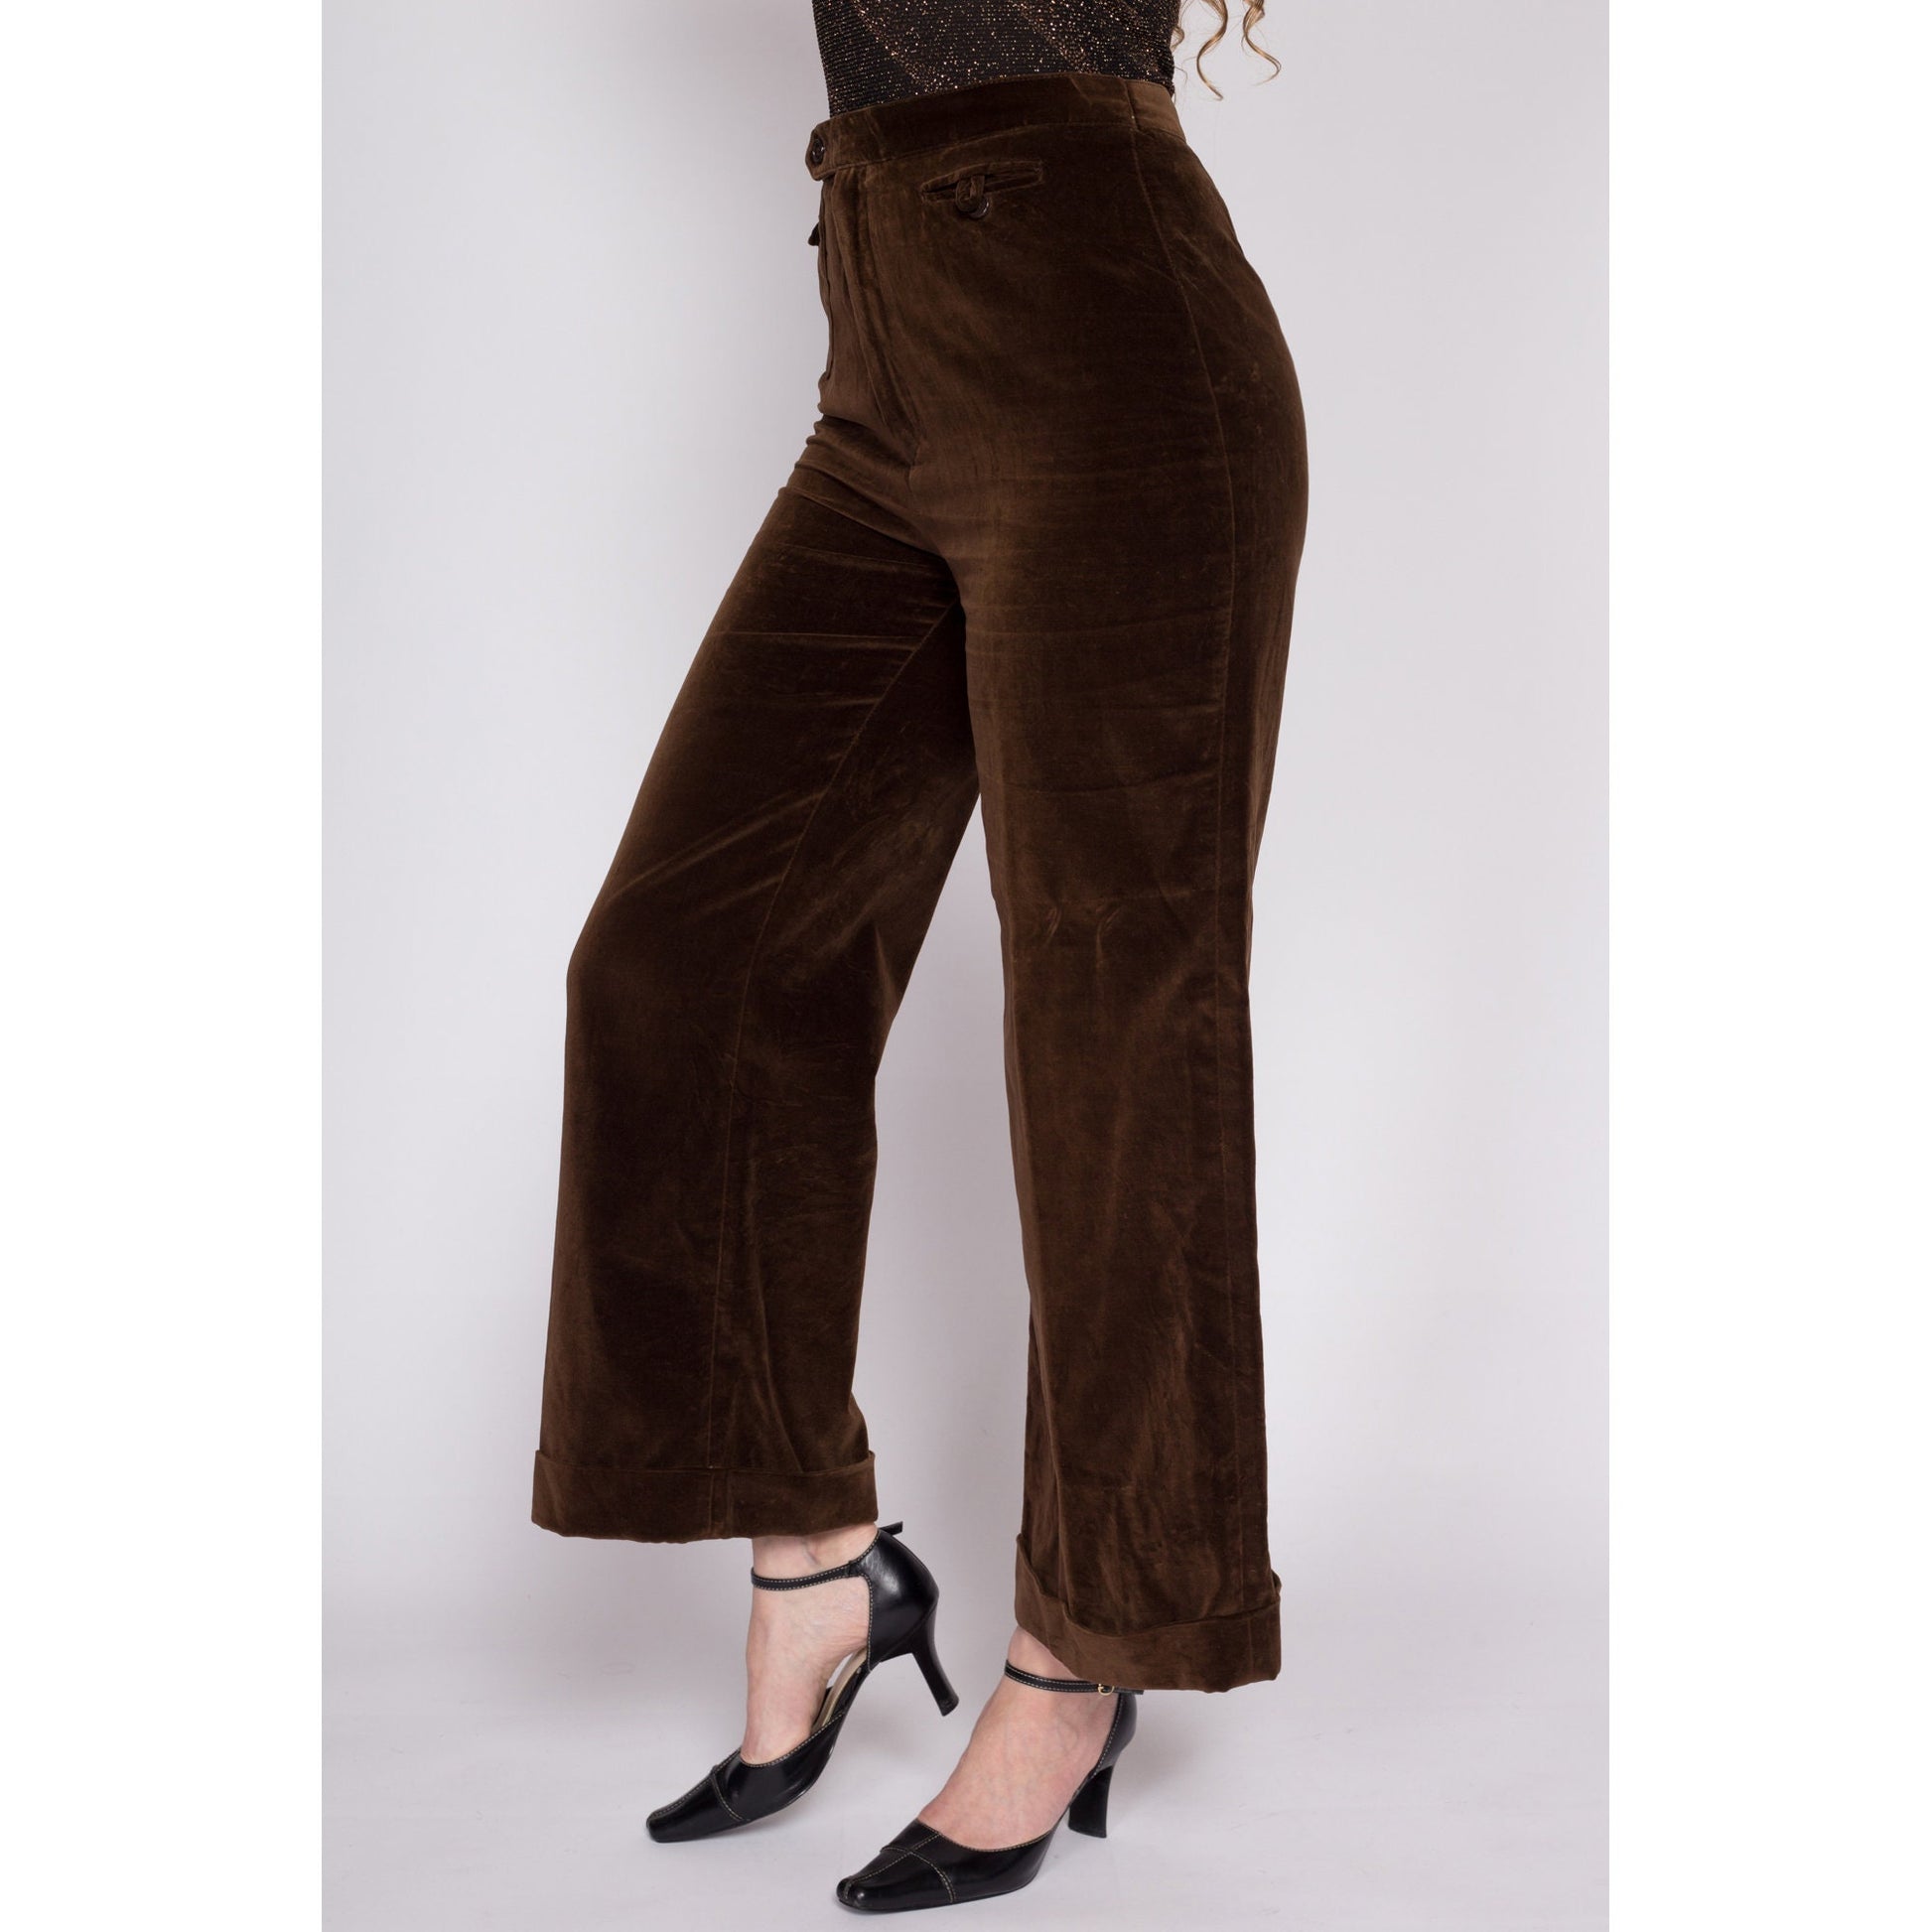 70s Chocolate Brown Velvet Pants - Medium, 28 – Flying Apple Vintage